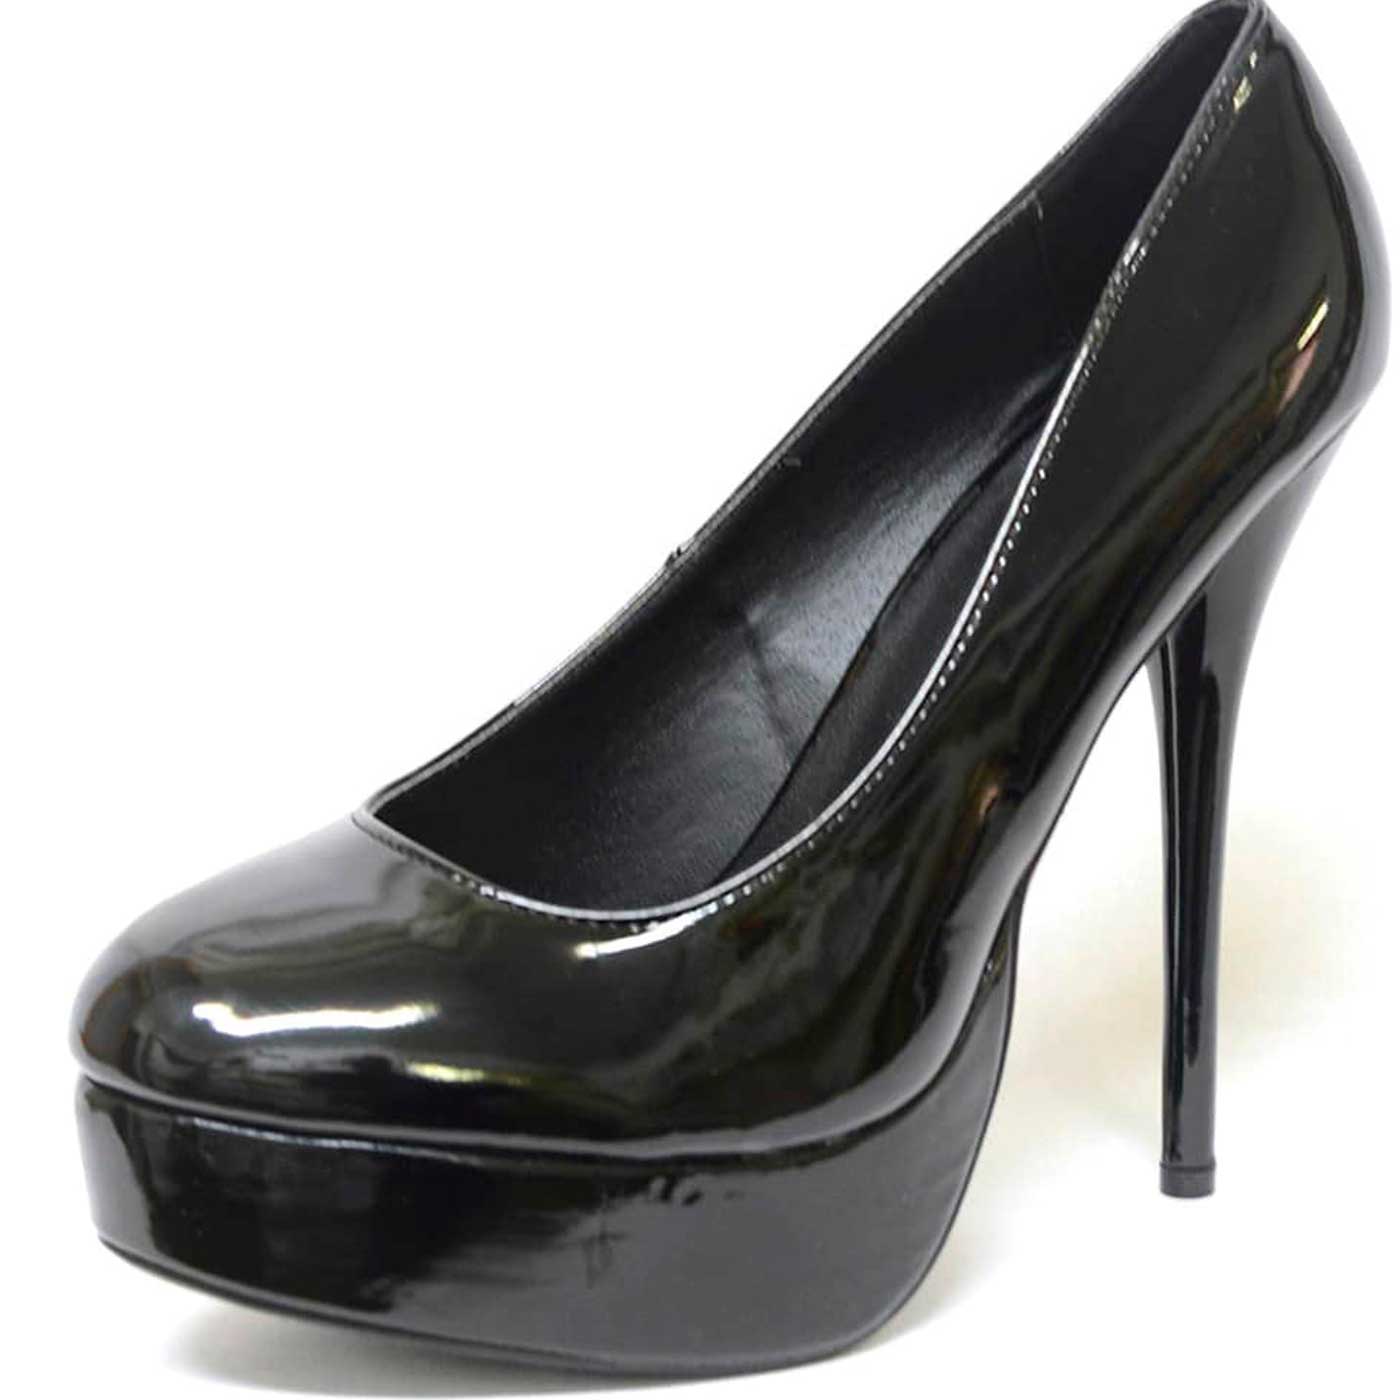 escarpins vernis noir, chaussures femme grande taille